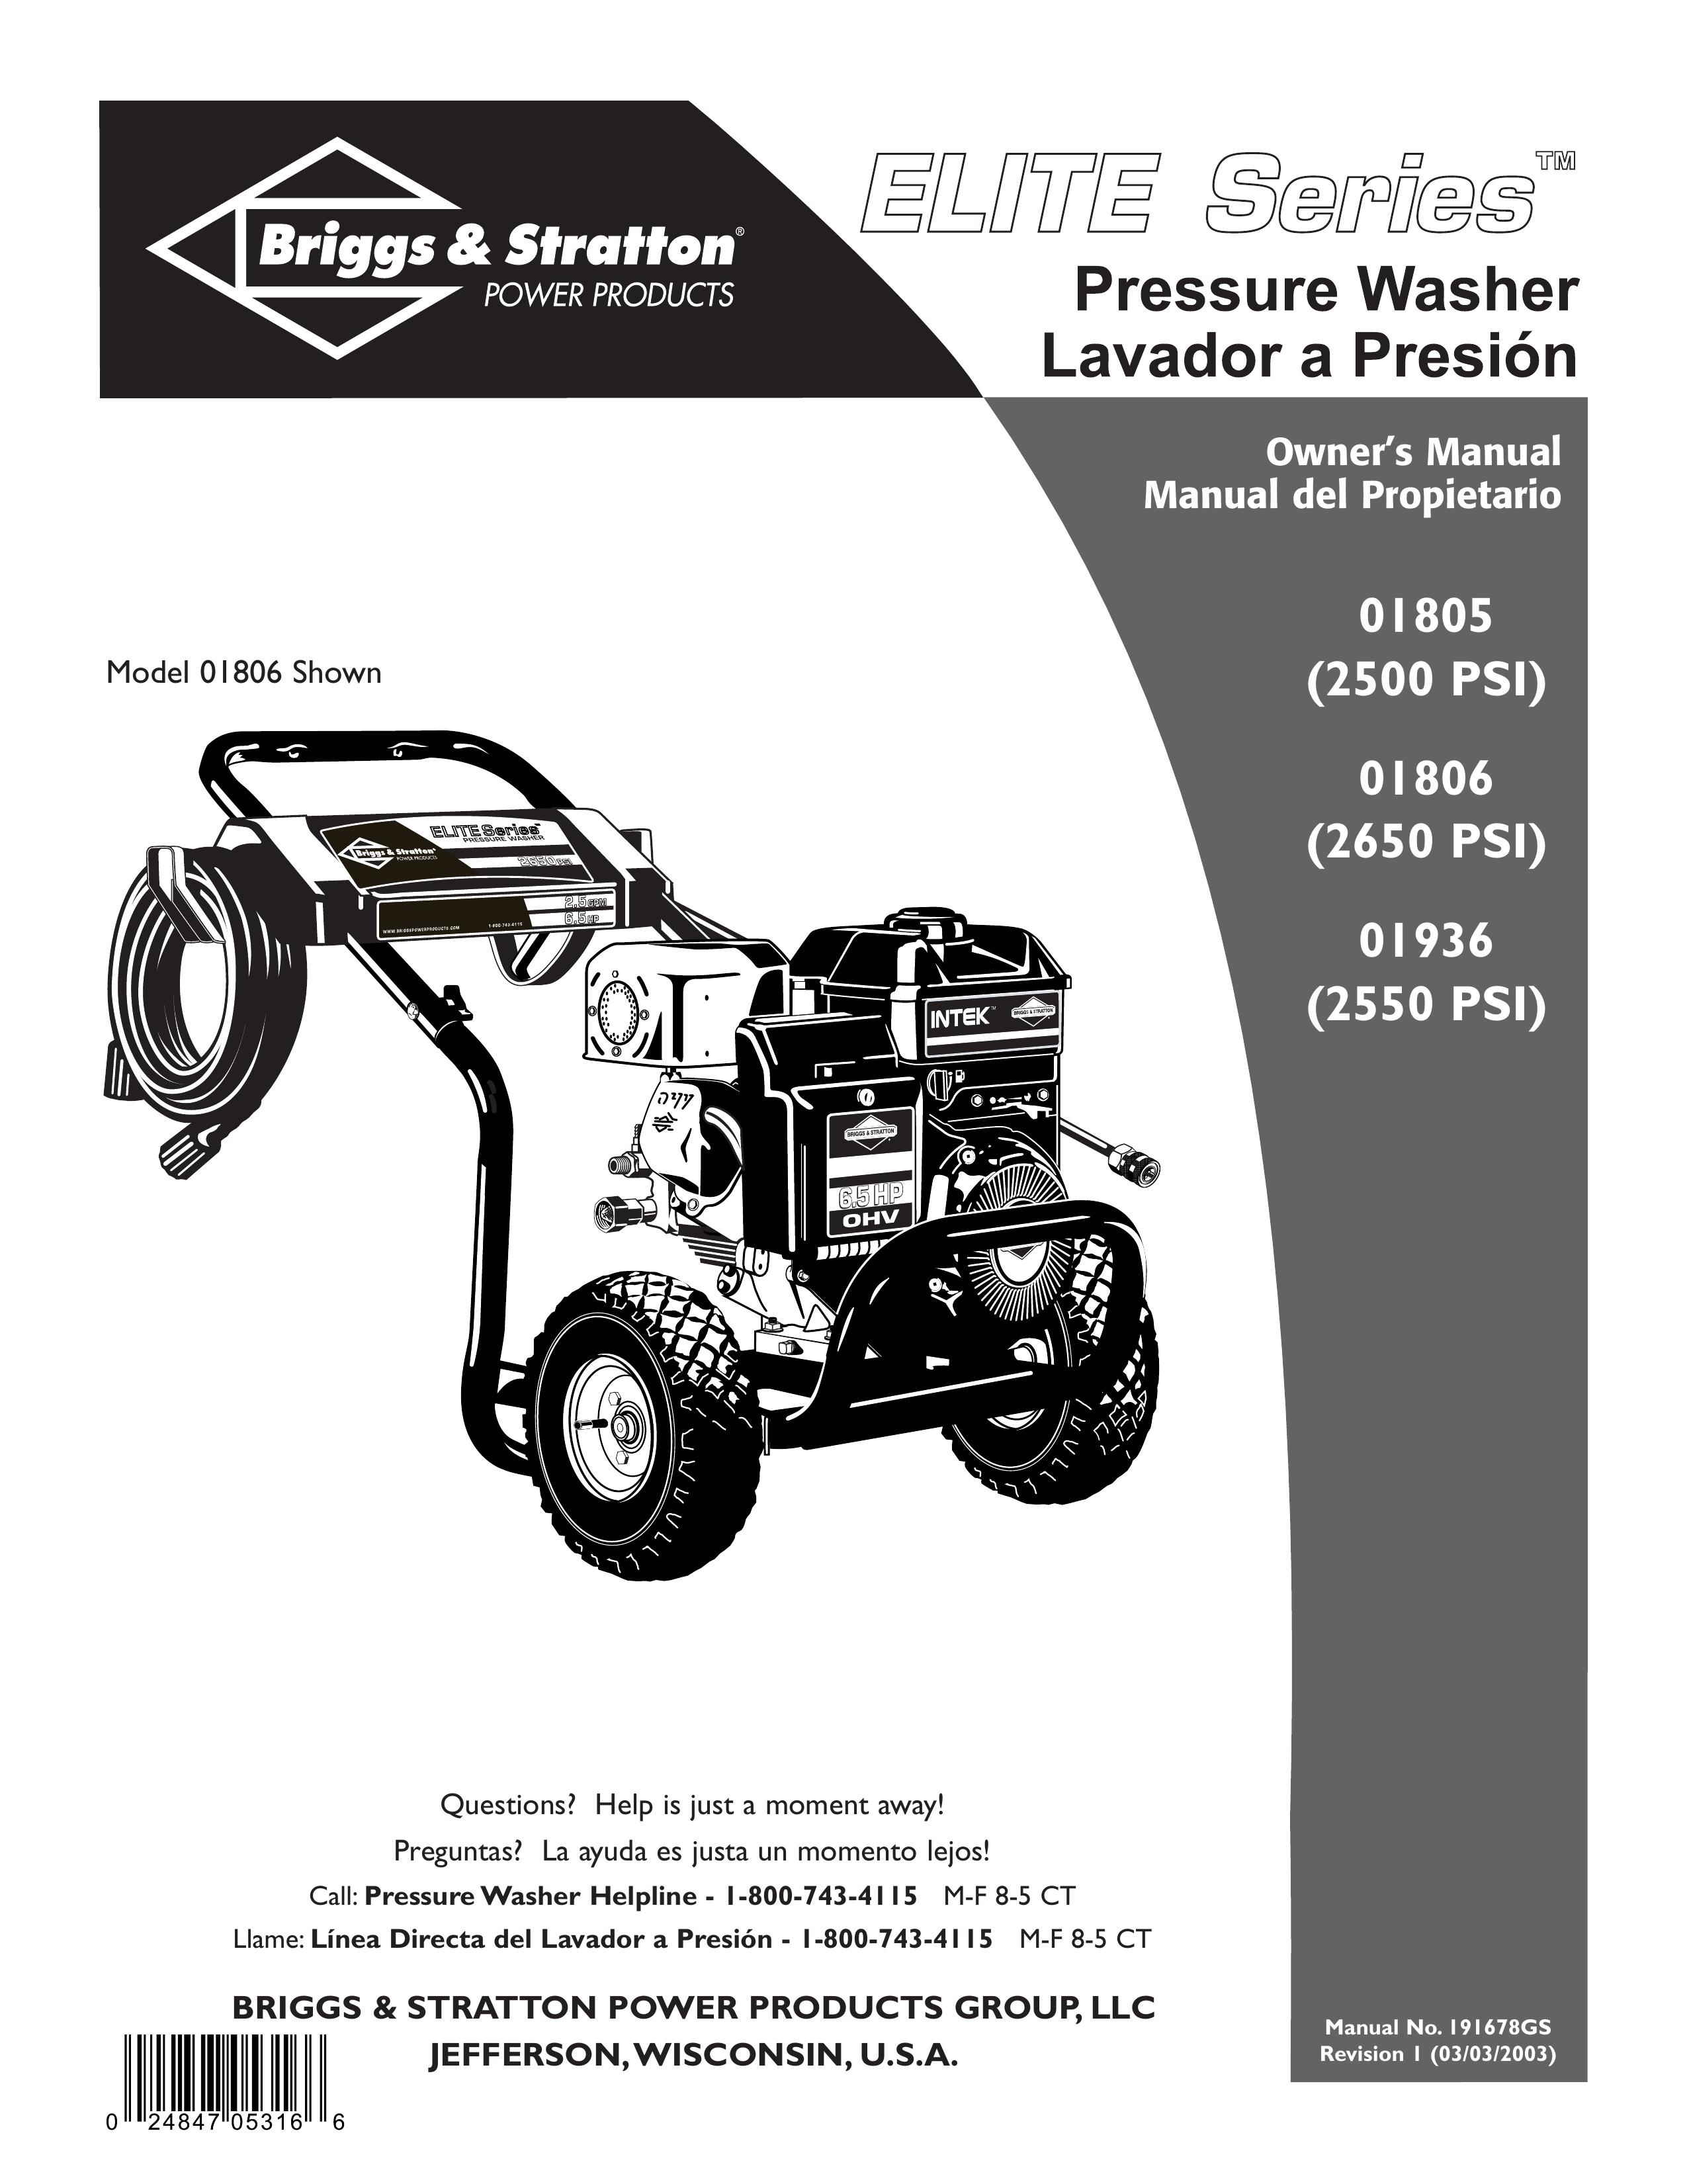 Briggs & Stratton 01806 Pressure Washer User Manual